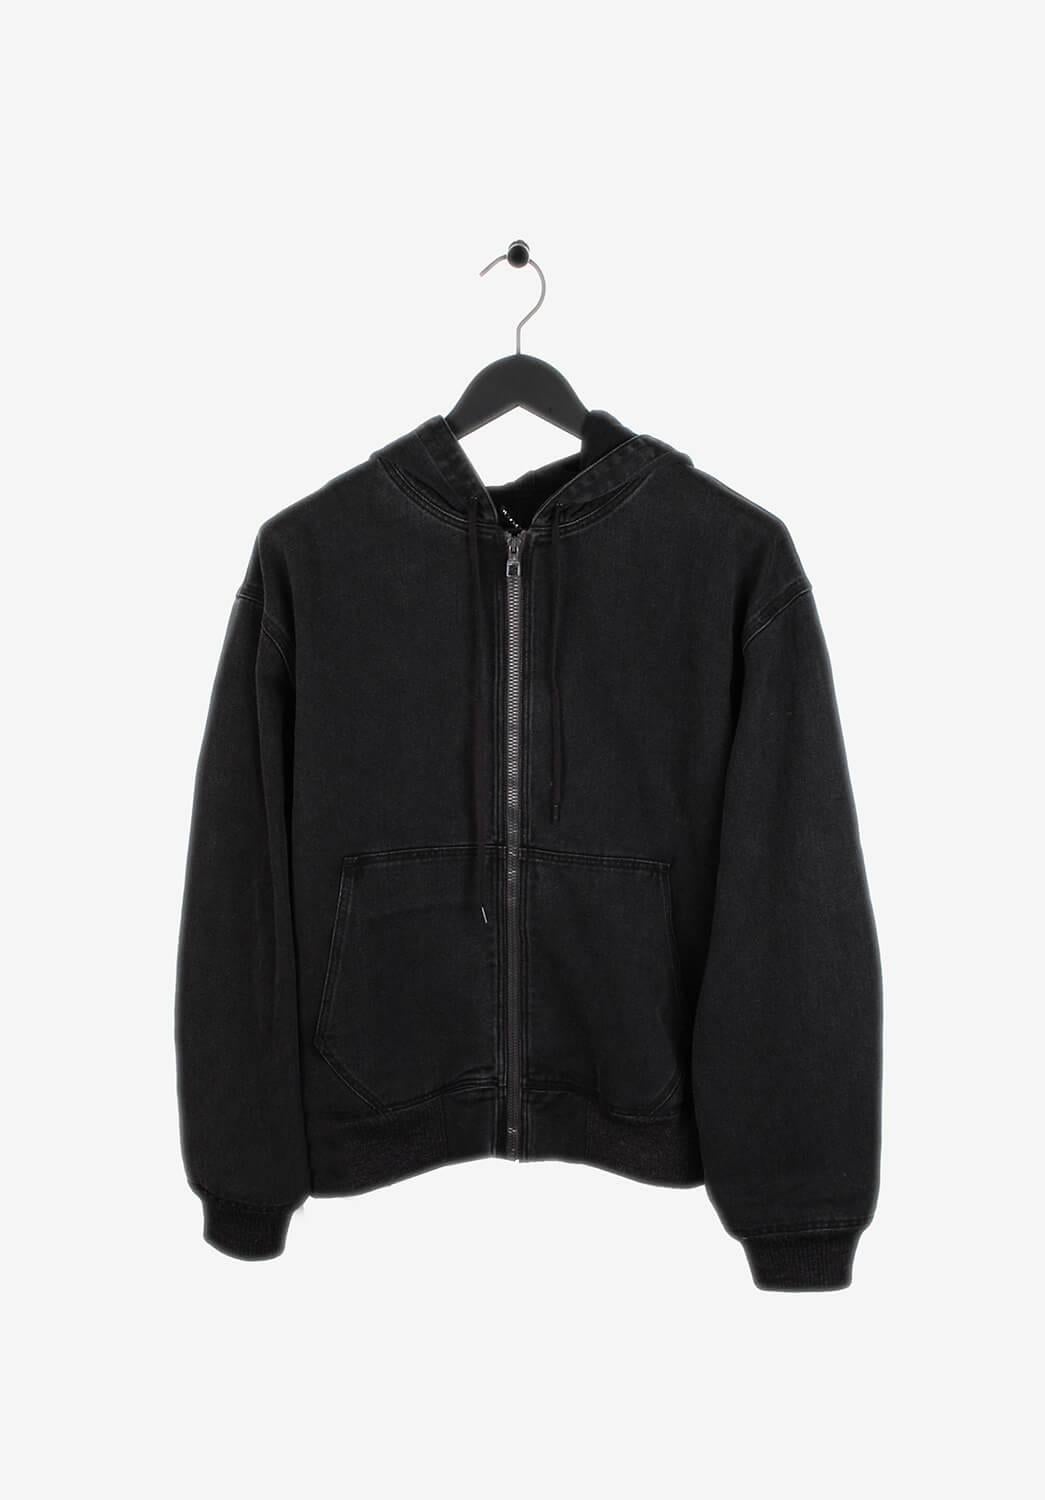 L'article en vente est 100% authentique Louis Vuitton Men Denim Hooded Jacket.
Couleur : Gris
(La couleur réelle peut varier légèrement en raison de l'interprétation individuelle de l'écran de l'ordinateur).
Matériau : 100% coton
Taille de